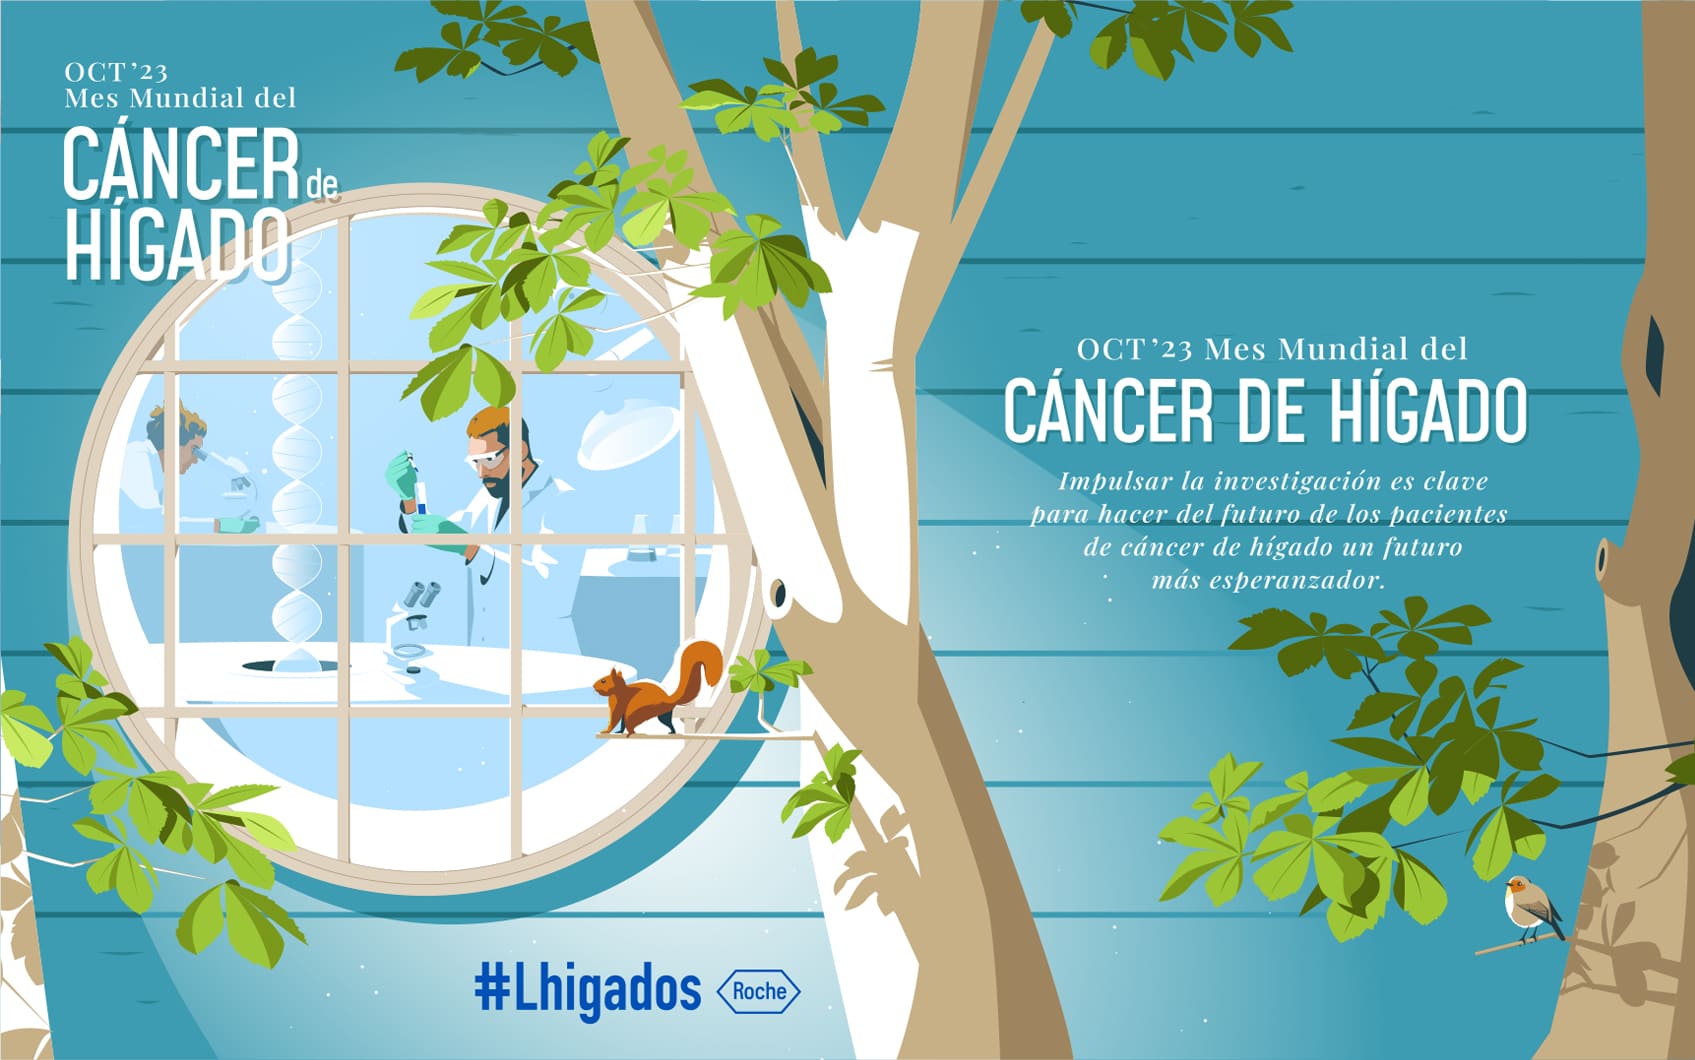 Campaña concienciación con motivo del Mes Cáncer de Hígado organizado por Roche España